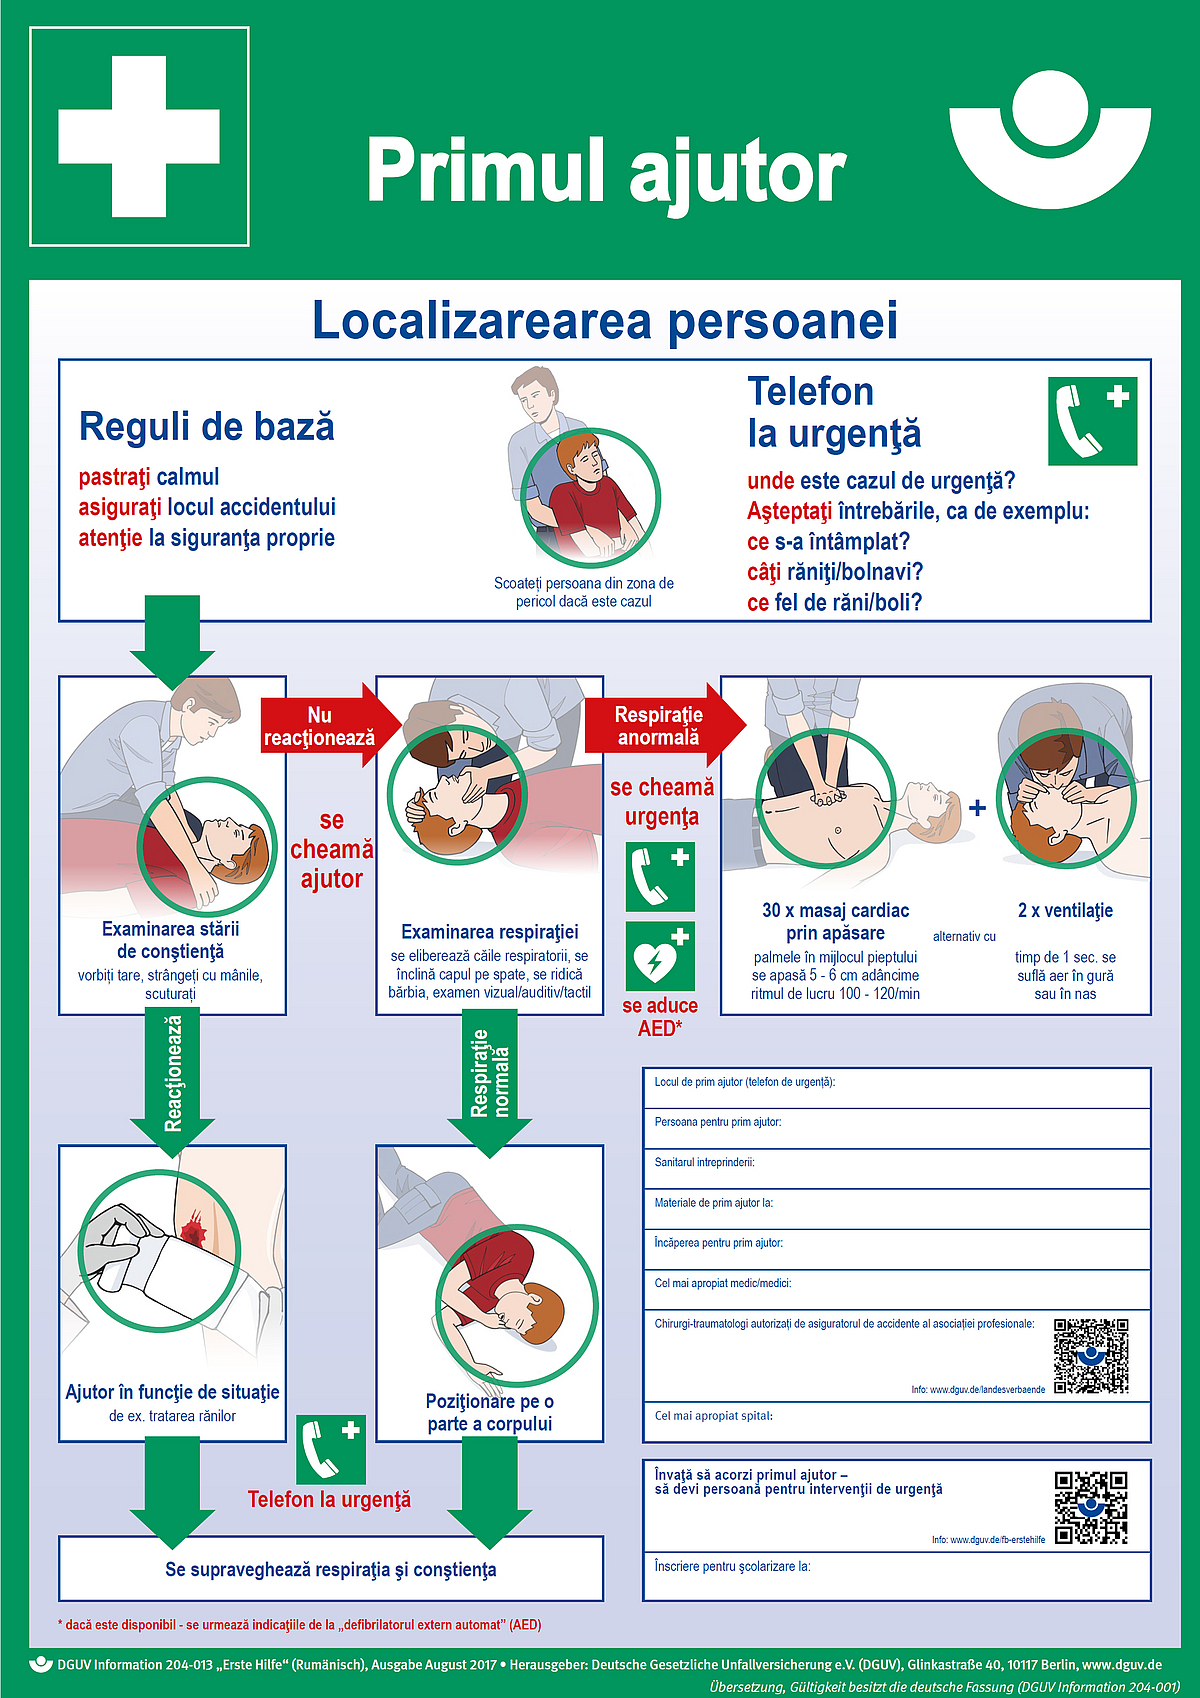 Primul ajutor (Rumänisch) - Erste Hilfe Plakat